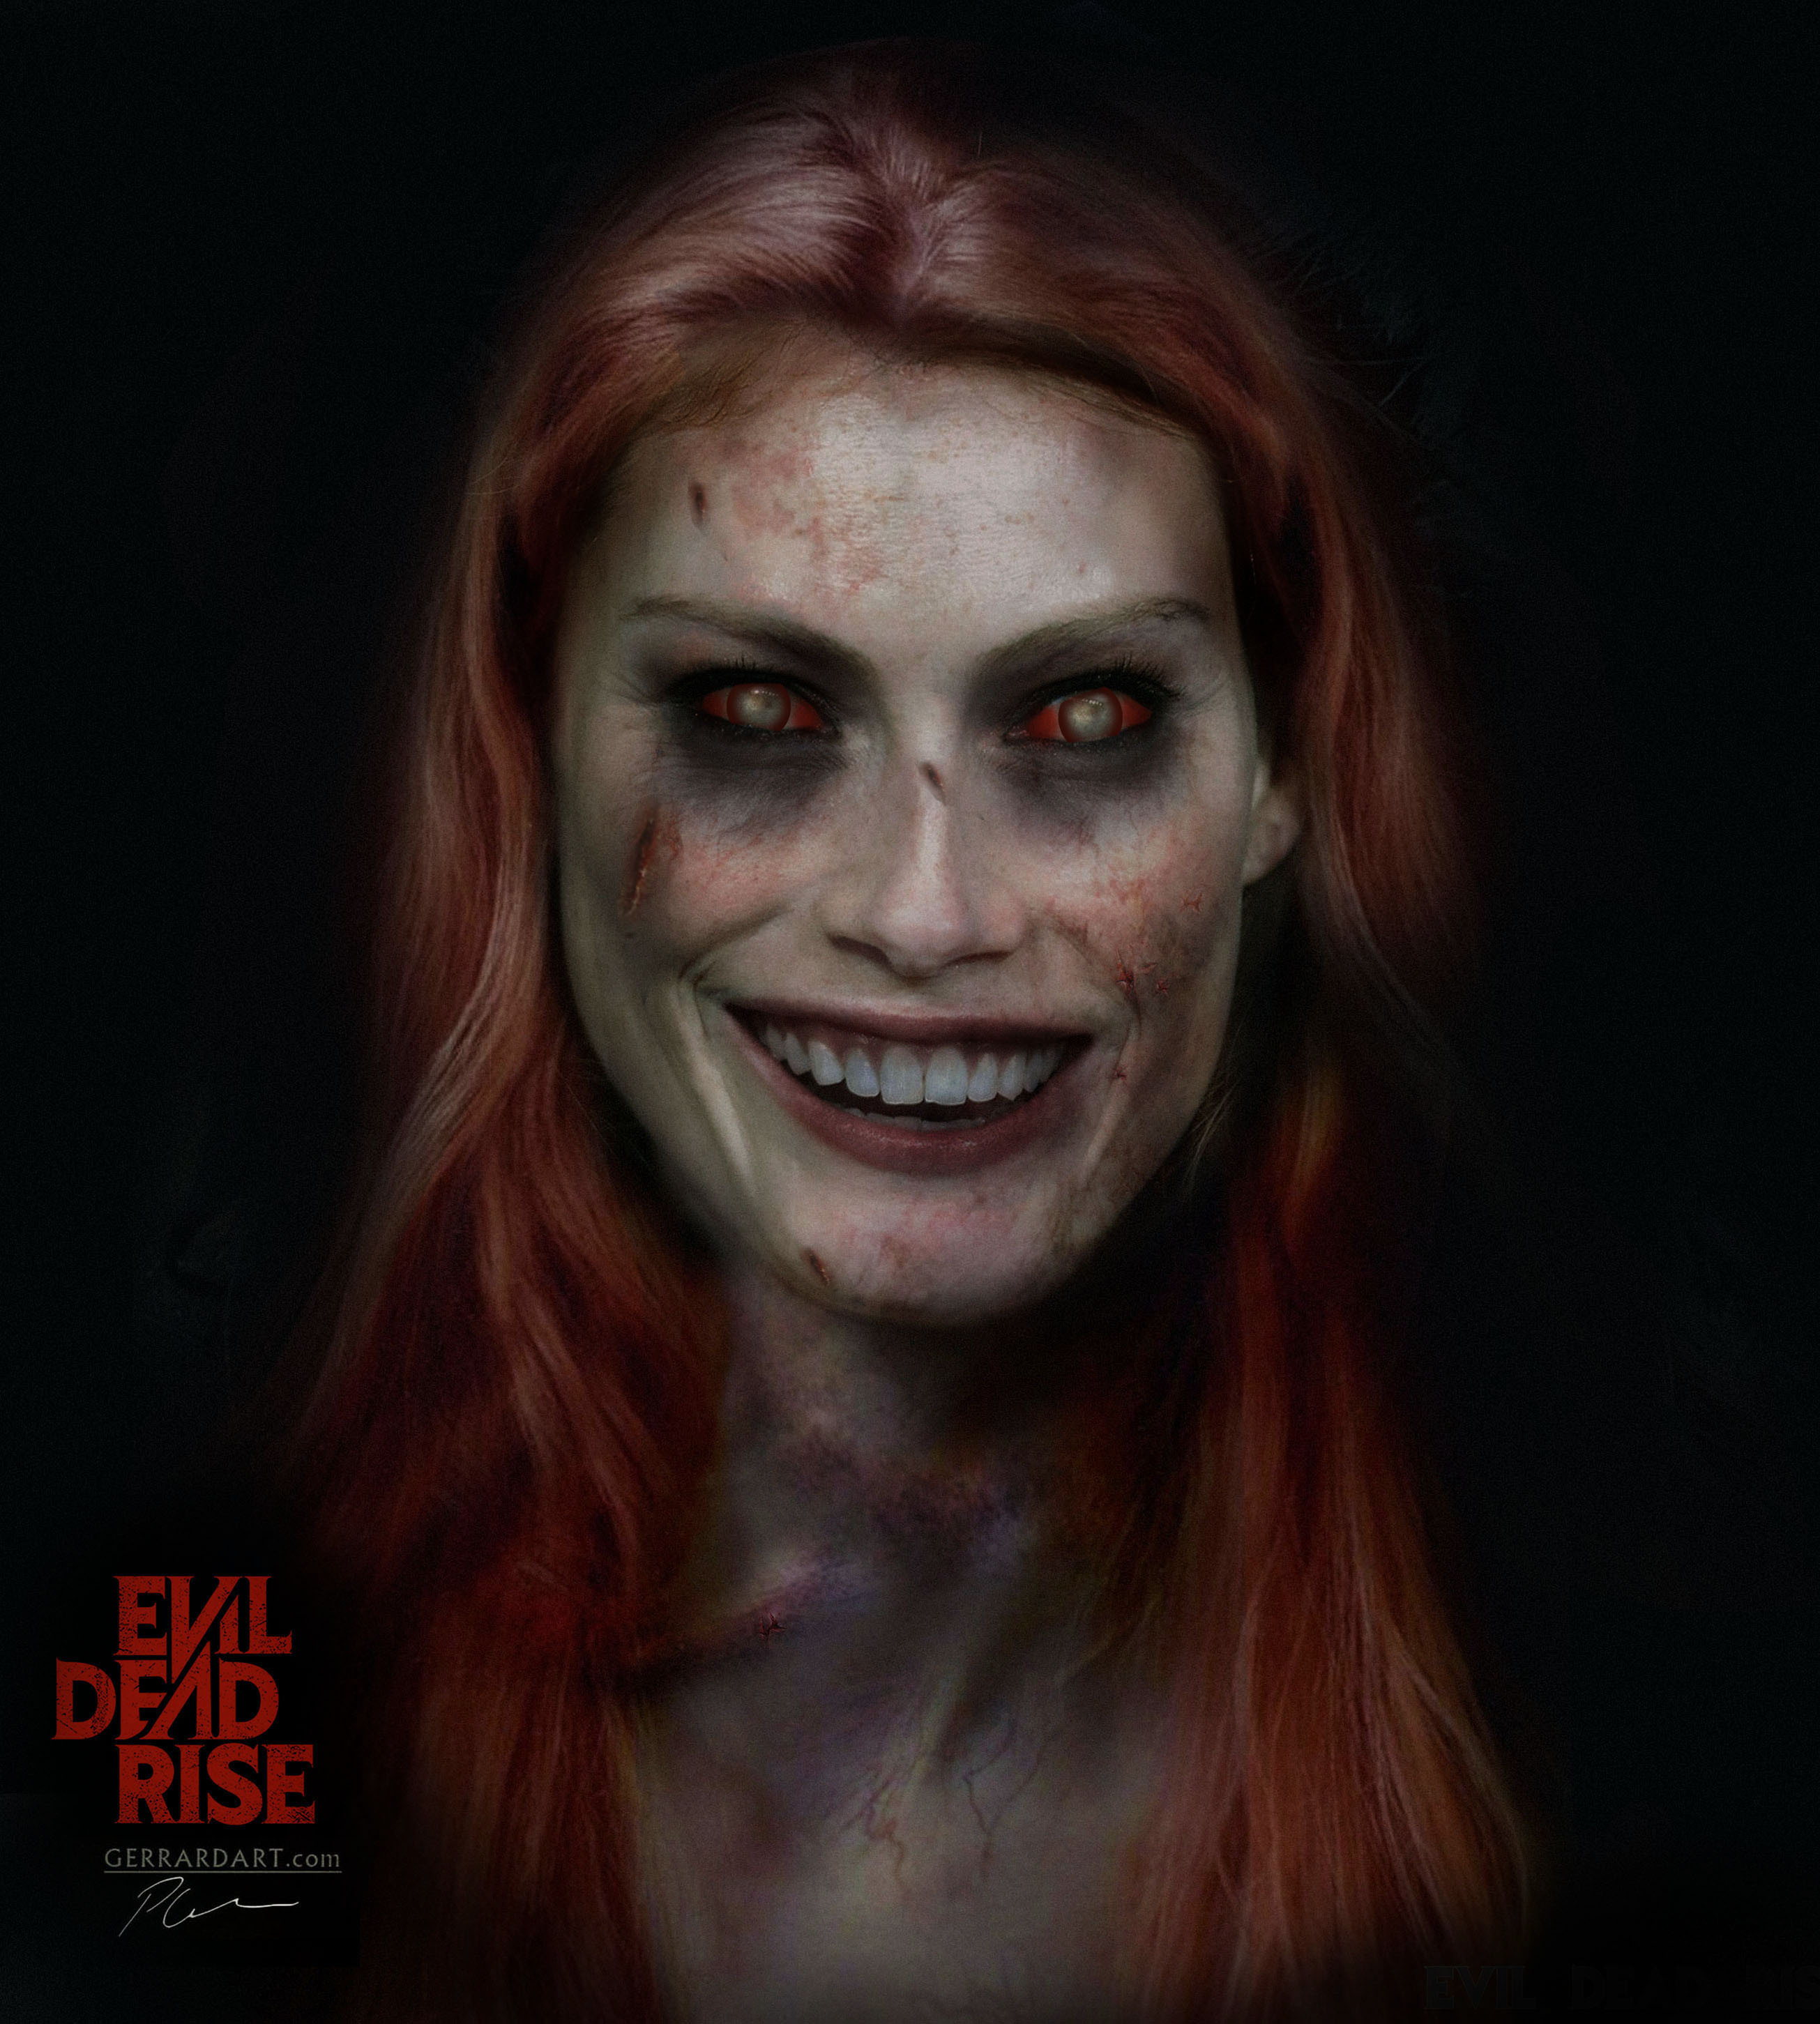 ArtStation - Evil dead rise